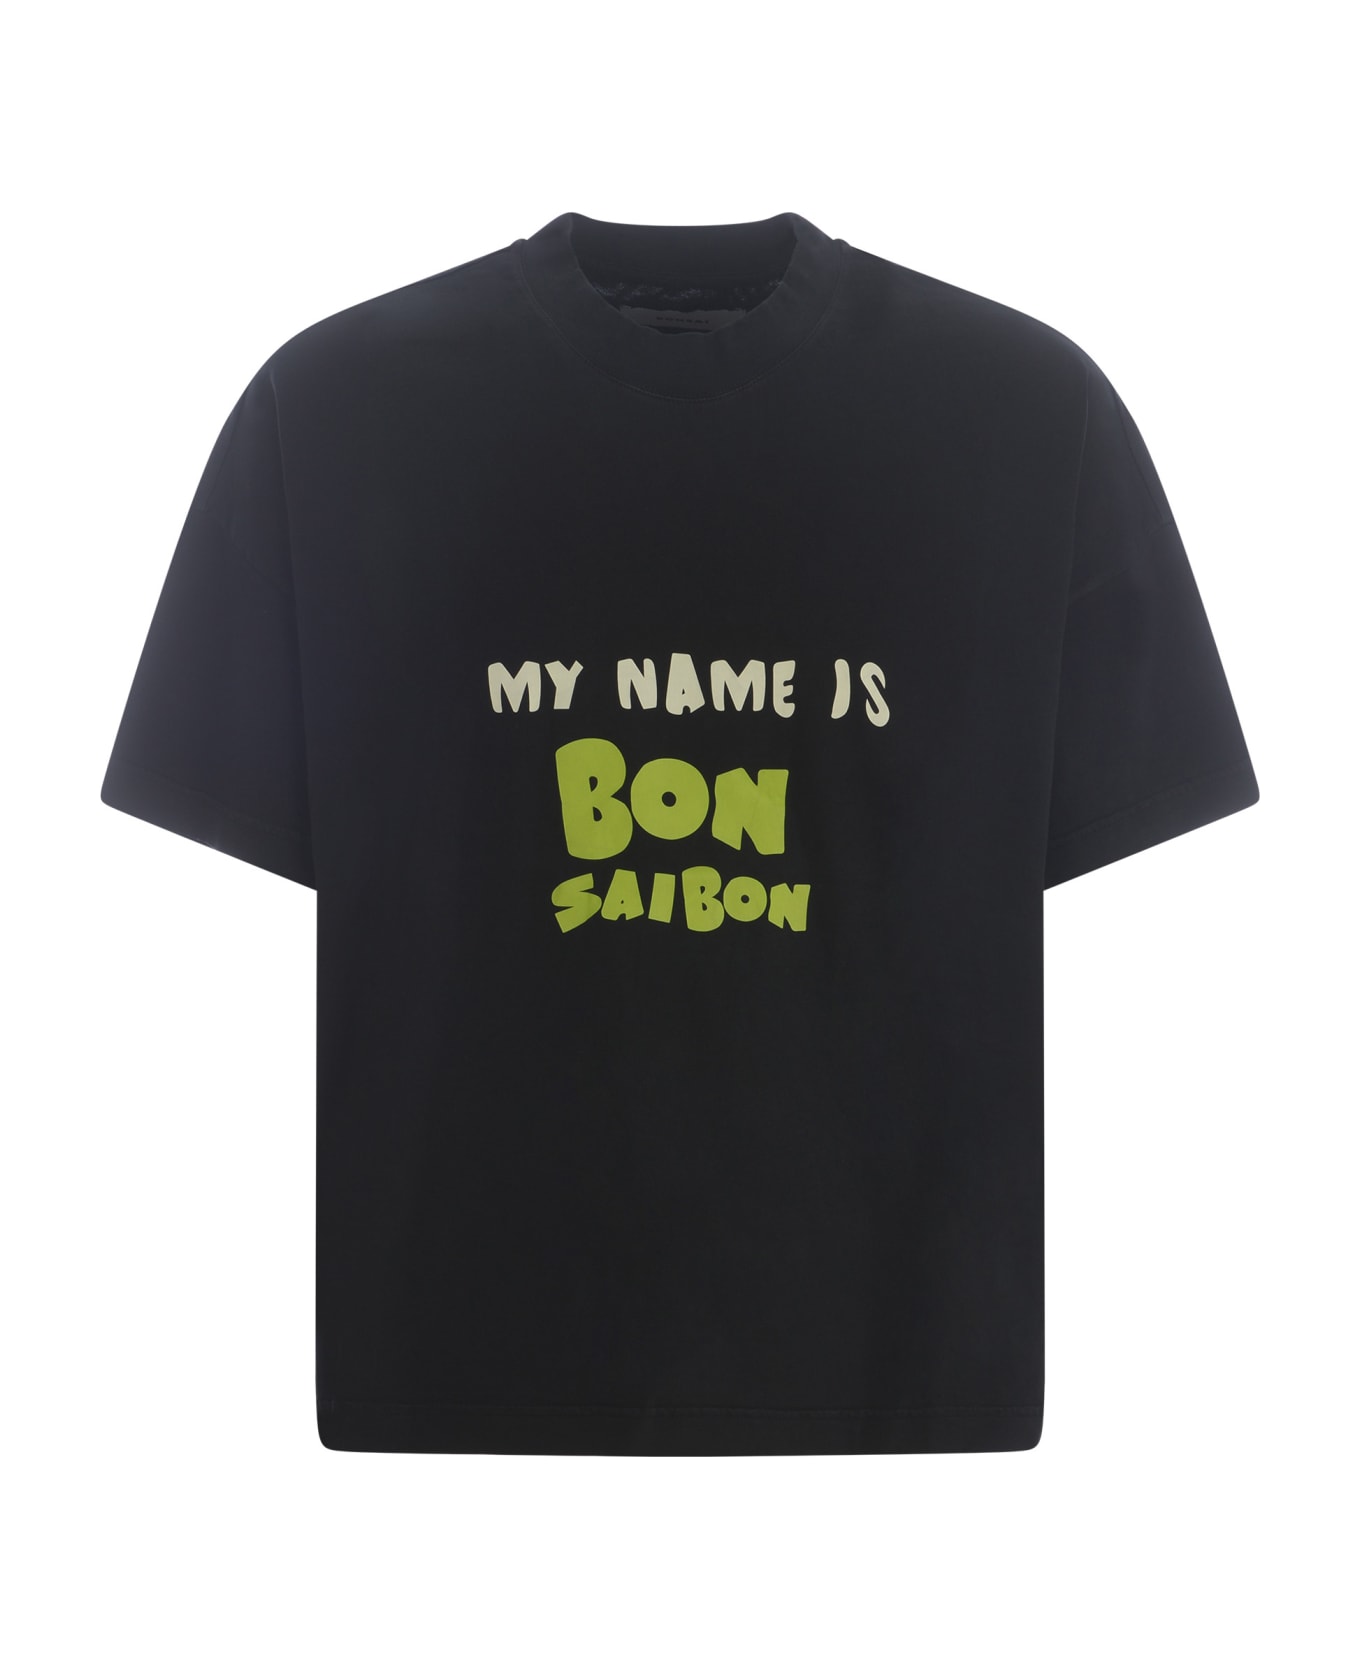 Bonsai T-shirt Bonsai "saibon" In Cotton - Nero